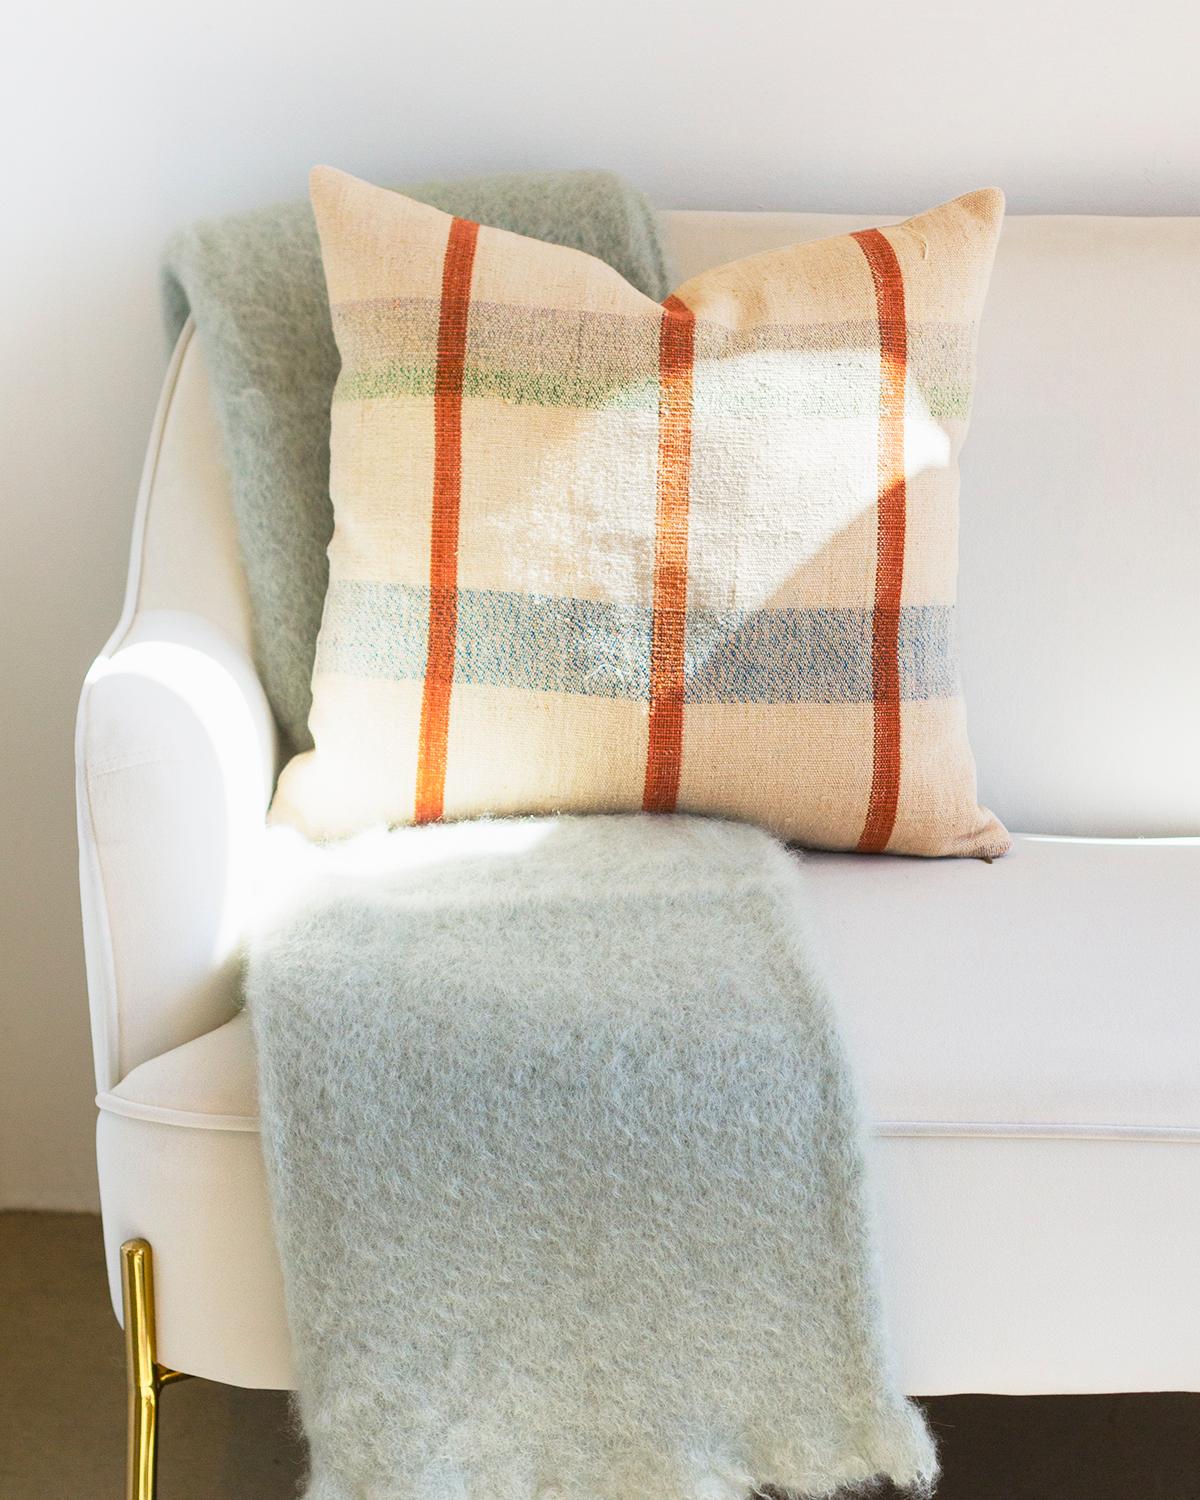 Cette couverture en mohair Seafoam Blanket Throw offre une sensation de douceur et de confort pour réchauffer votre hiver. Le gris clair avec un soupçon de bleu verdâtre offre un aspect unique et neutre à toute maison, procurant un luxe tranquille.